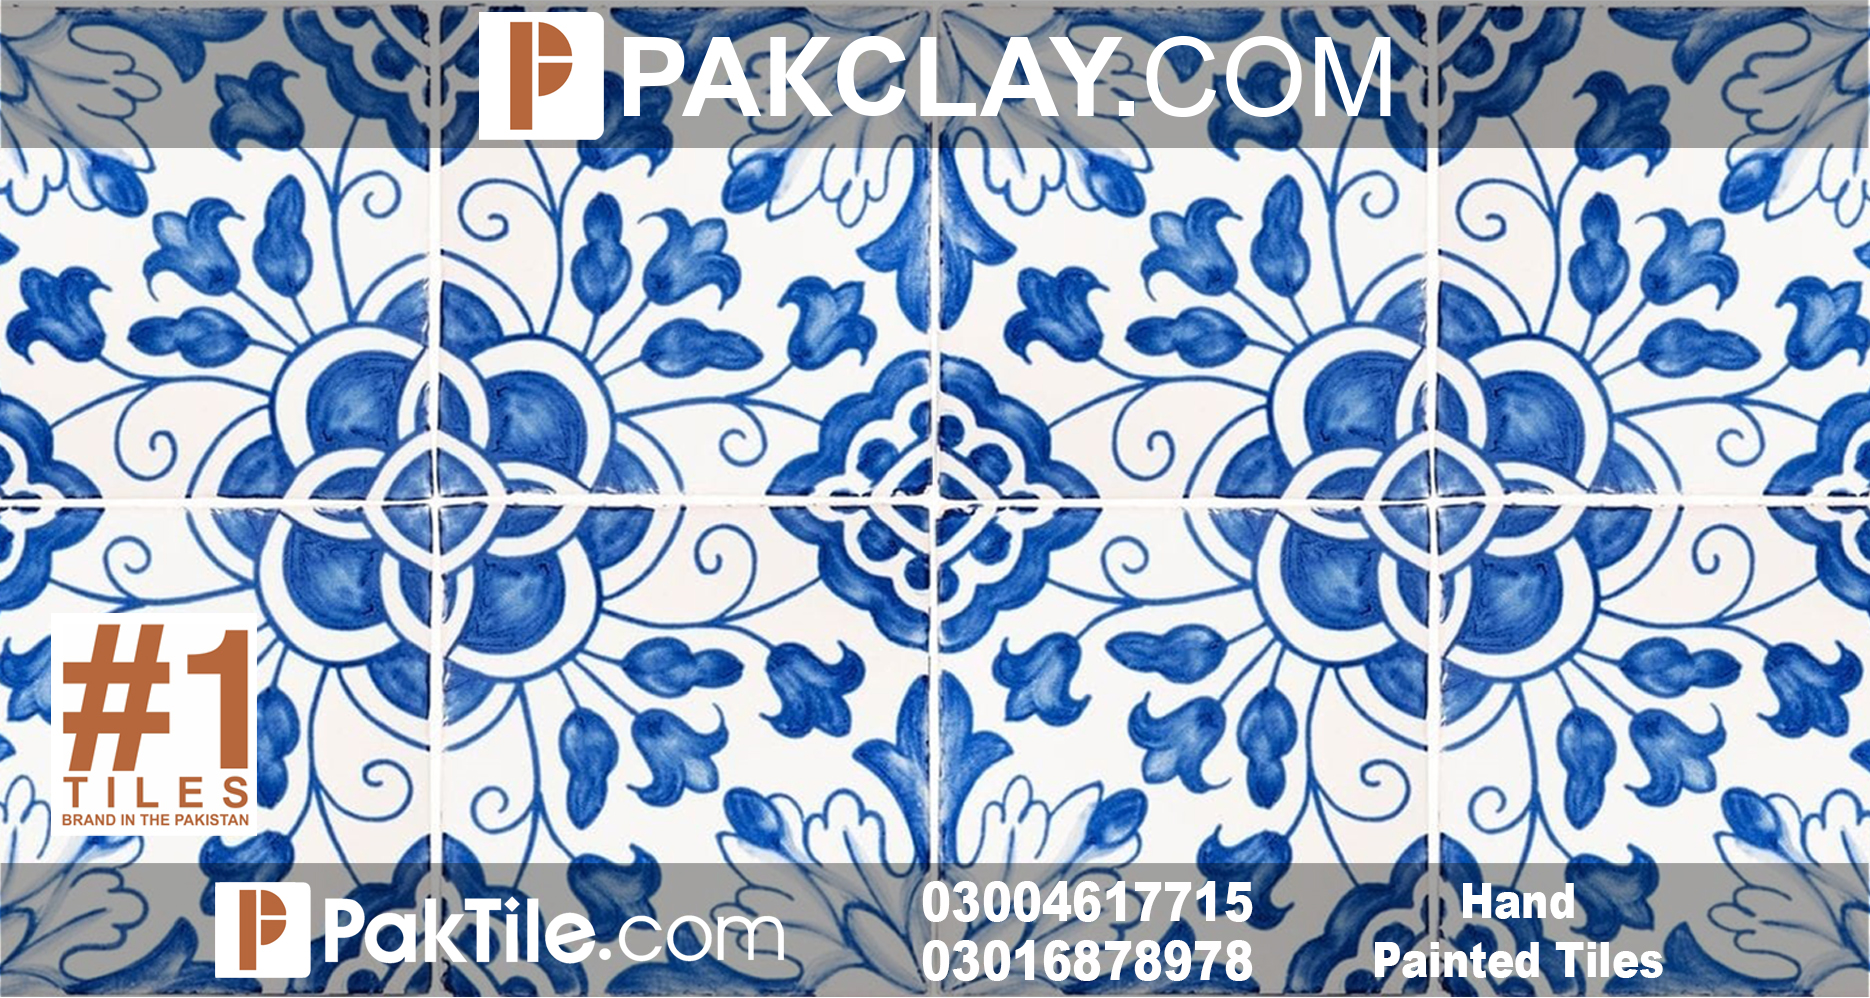 Buy Ceramic Tiles in Pakistan